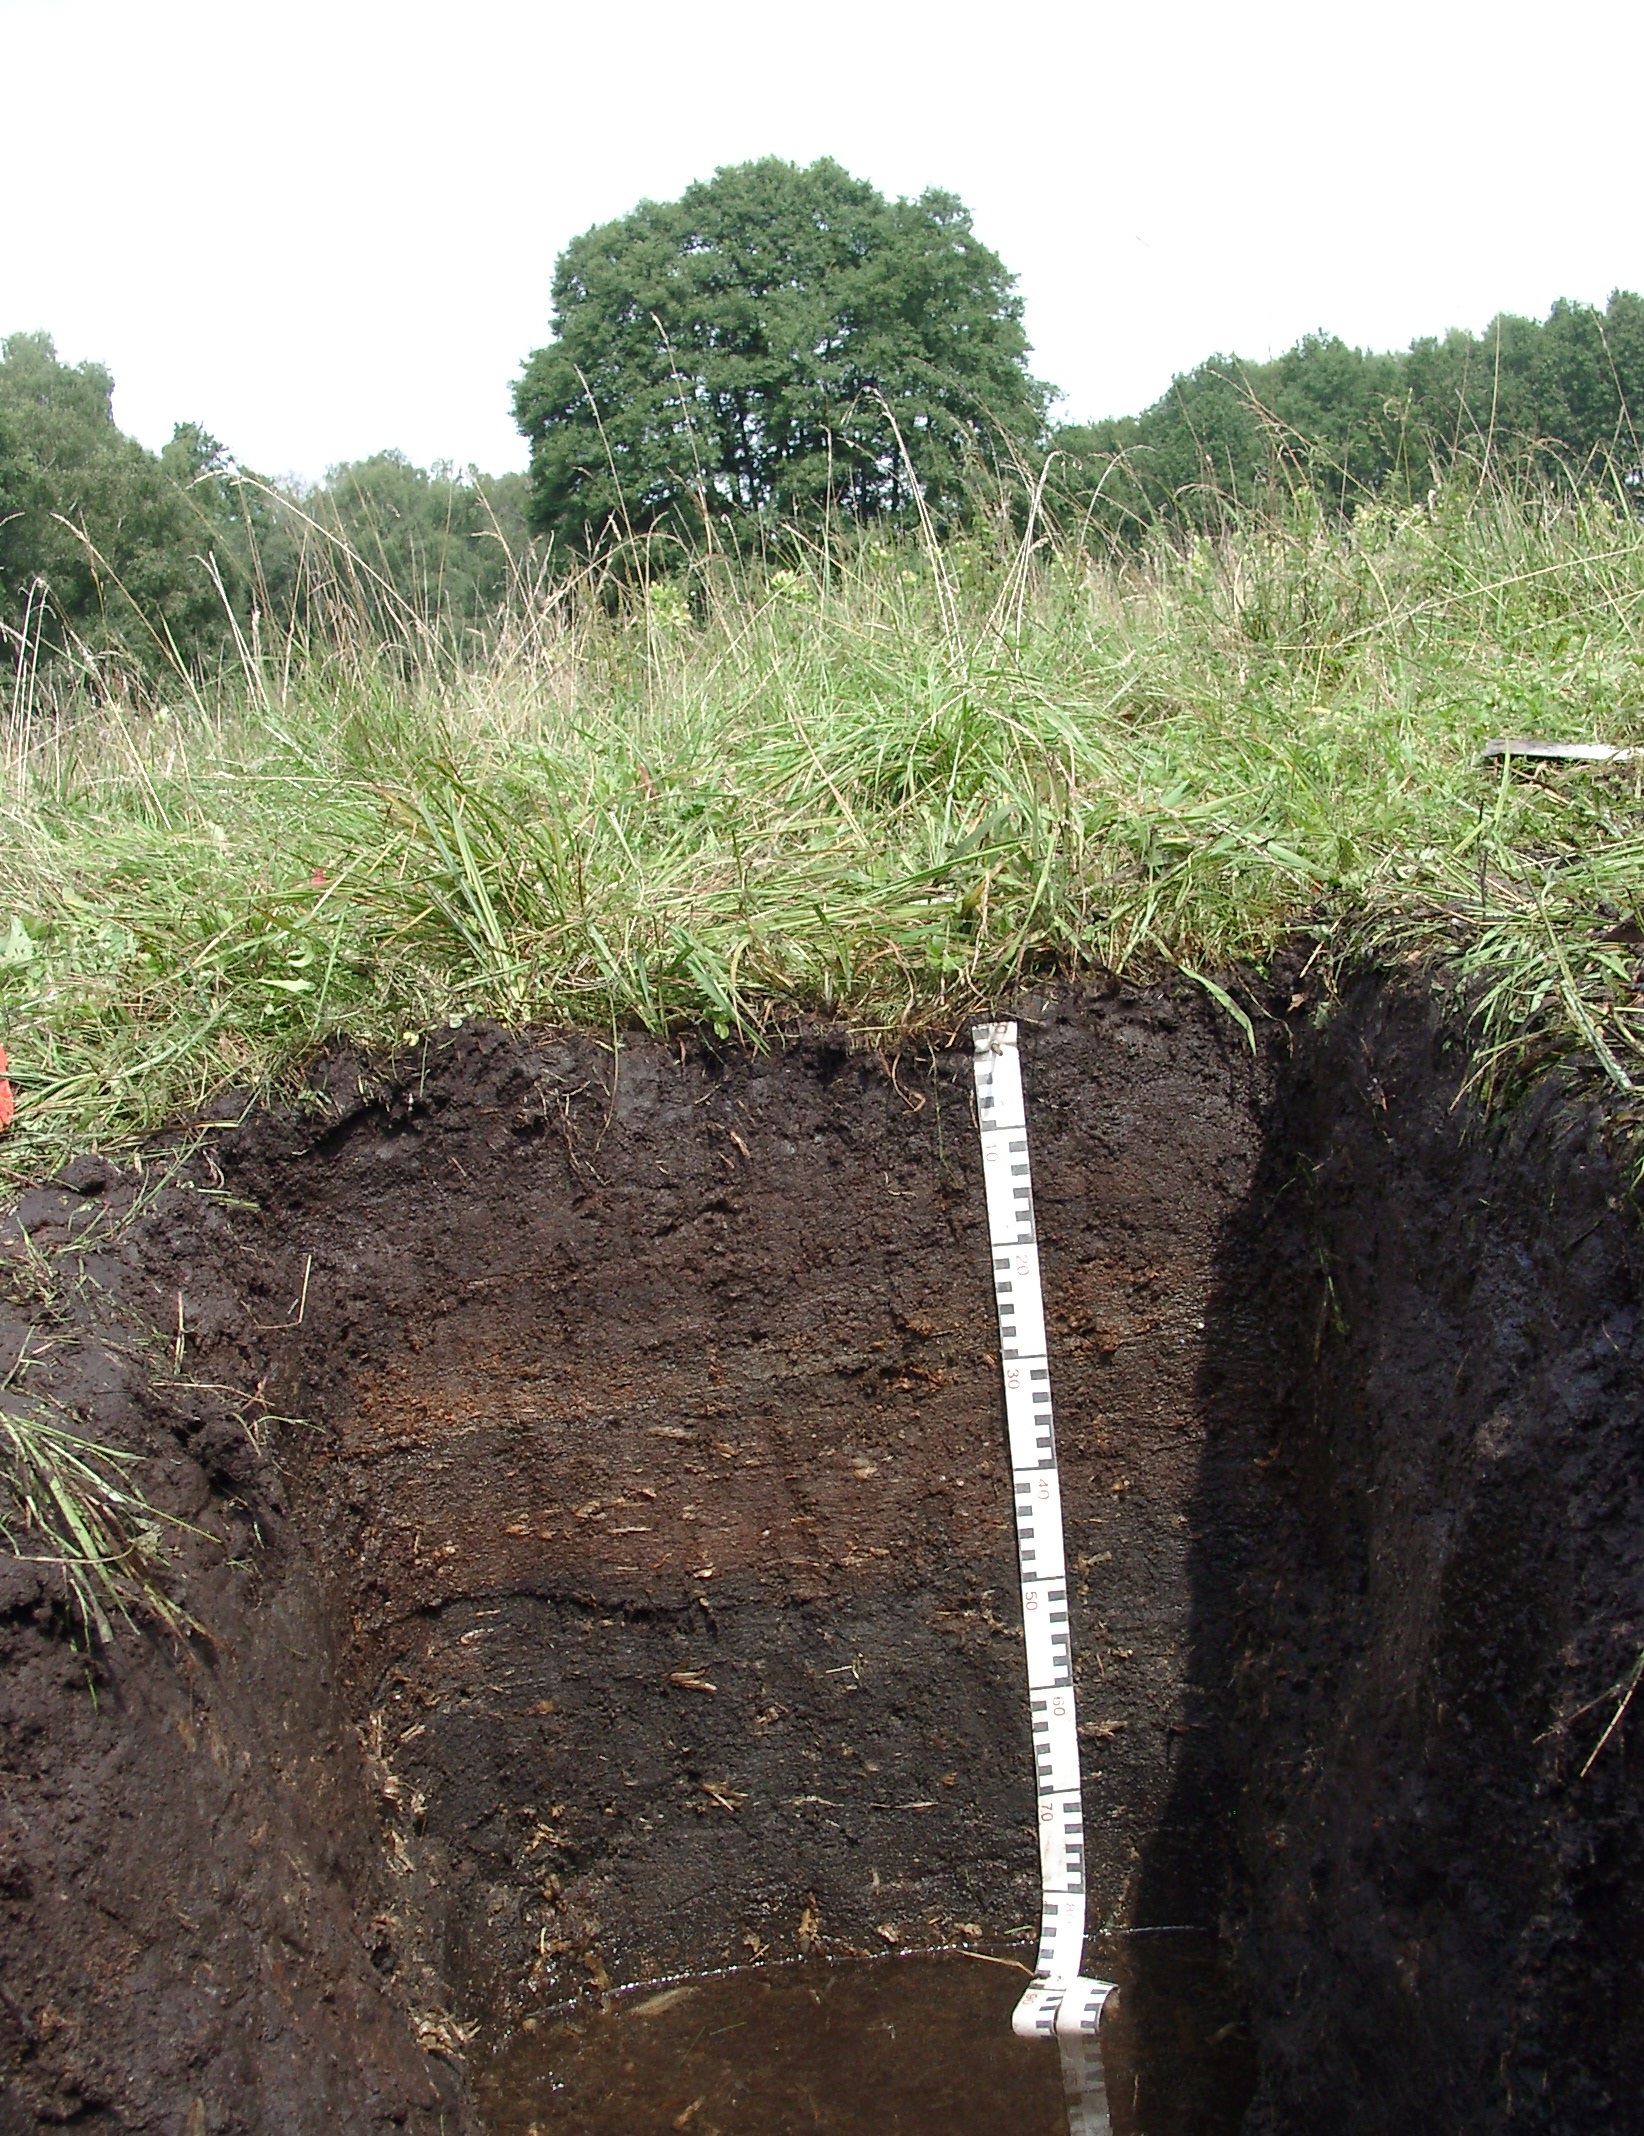 Das Bild zeigt eine Nahaufnahme eines Moorbodenprofils mit seinen ver-schiedenen Bodenhorizonten, die verschiedene Bereiche voneinander ab-grenzen.